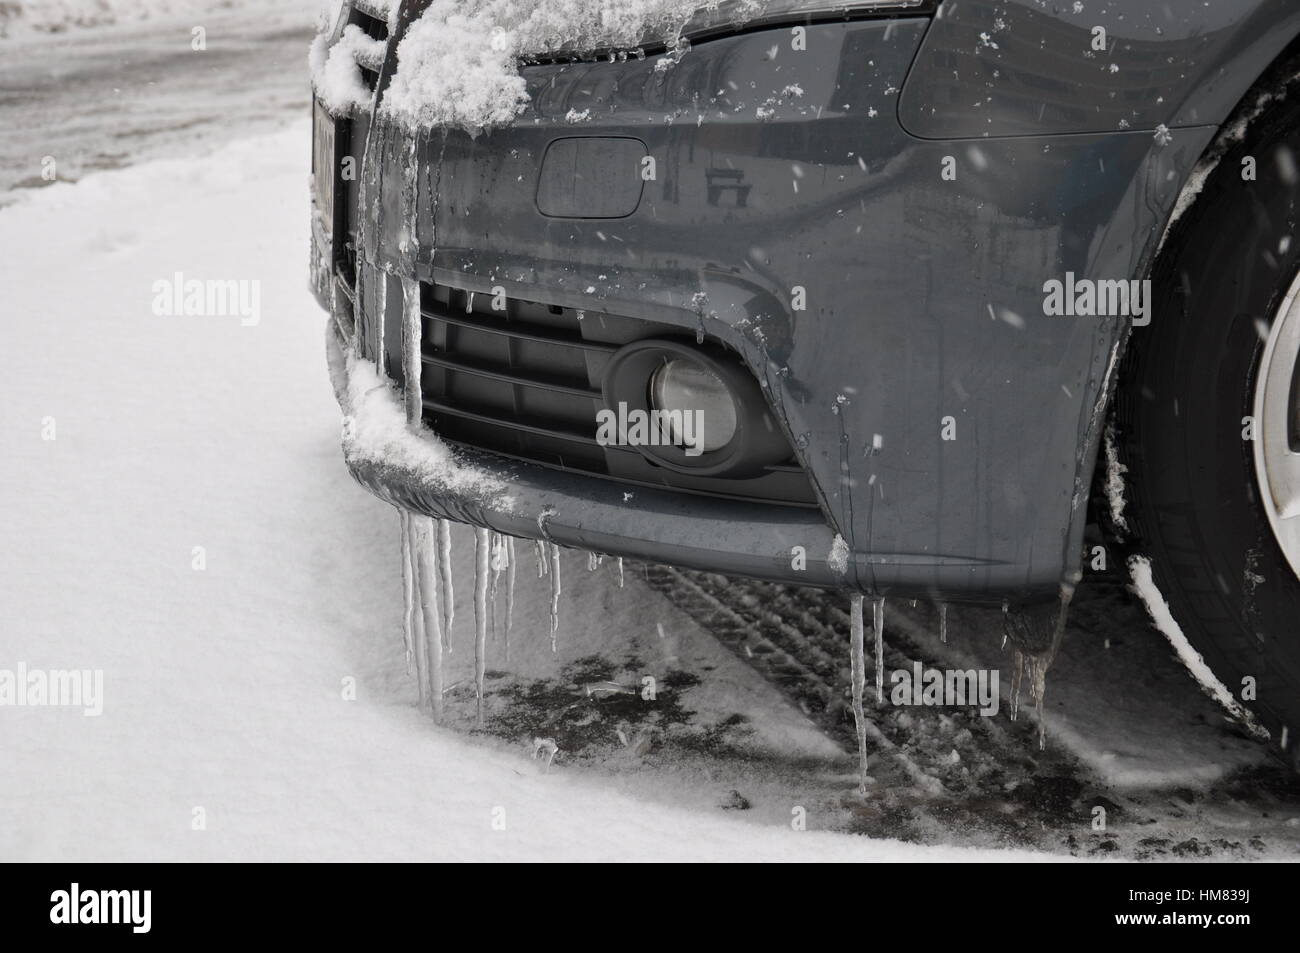 AUDI Auto passeggeri, auto, veicolo, inverno, ghiaccio, frost Foto Stock